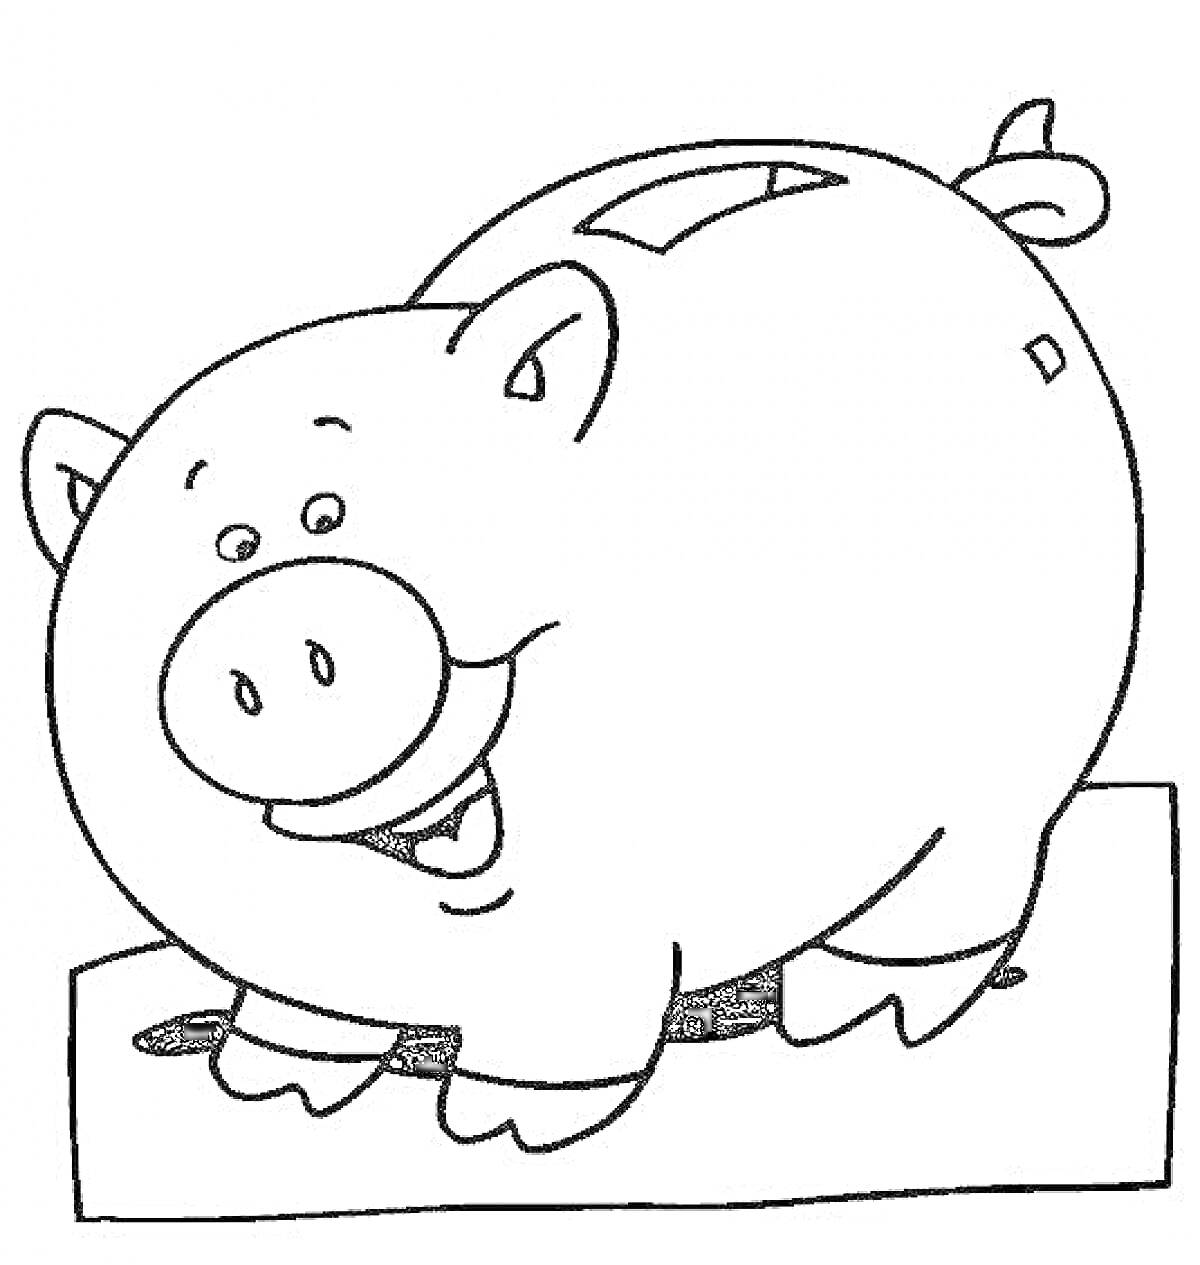 Раскраска Копилка в форме свинки стоит на прямоугольном основании